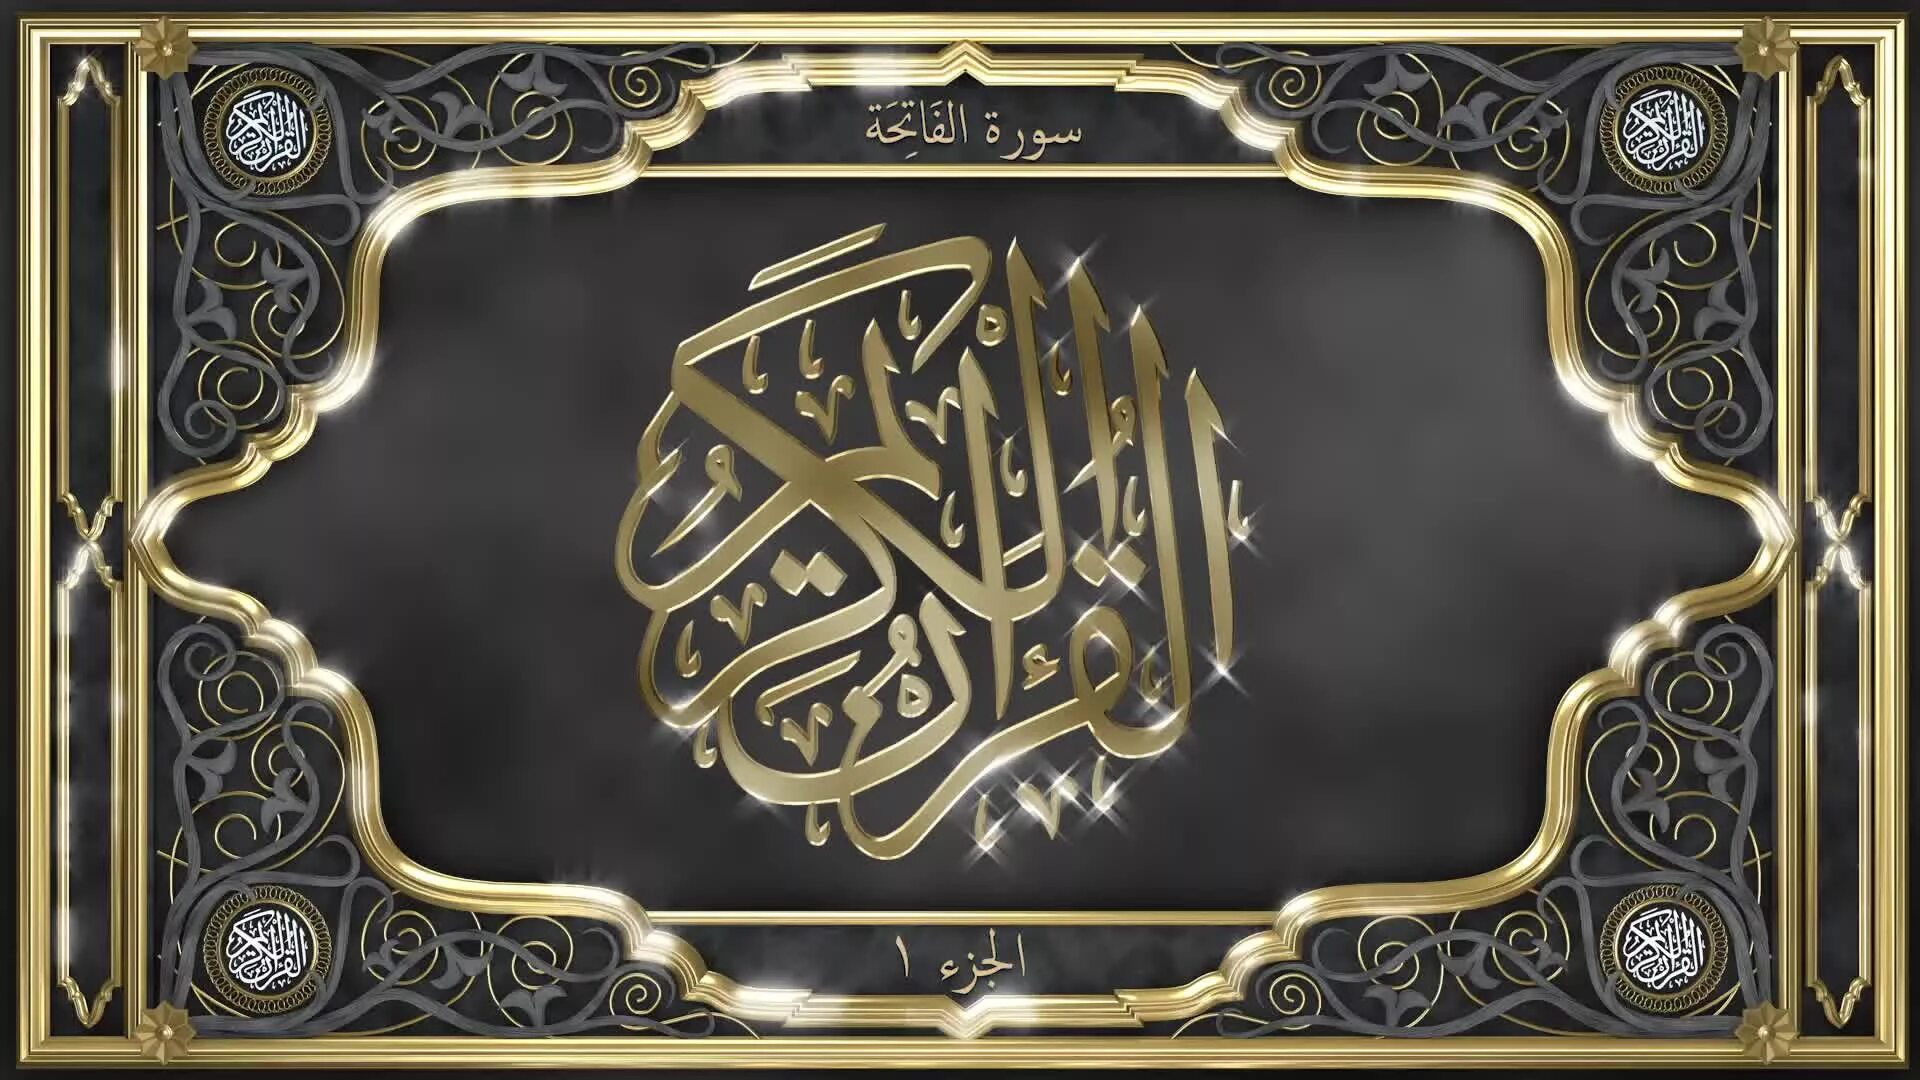 Коран слушать на арабском русском. Аль Фатиха каллиграфия на арабском. Сура Аль Фатиха каллиграфия. Рамка для Корана. Сура Аль Фатиха на арабском.